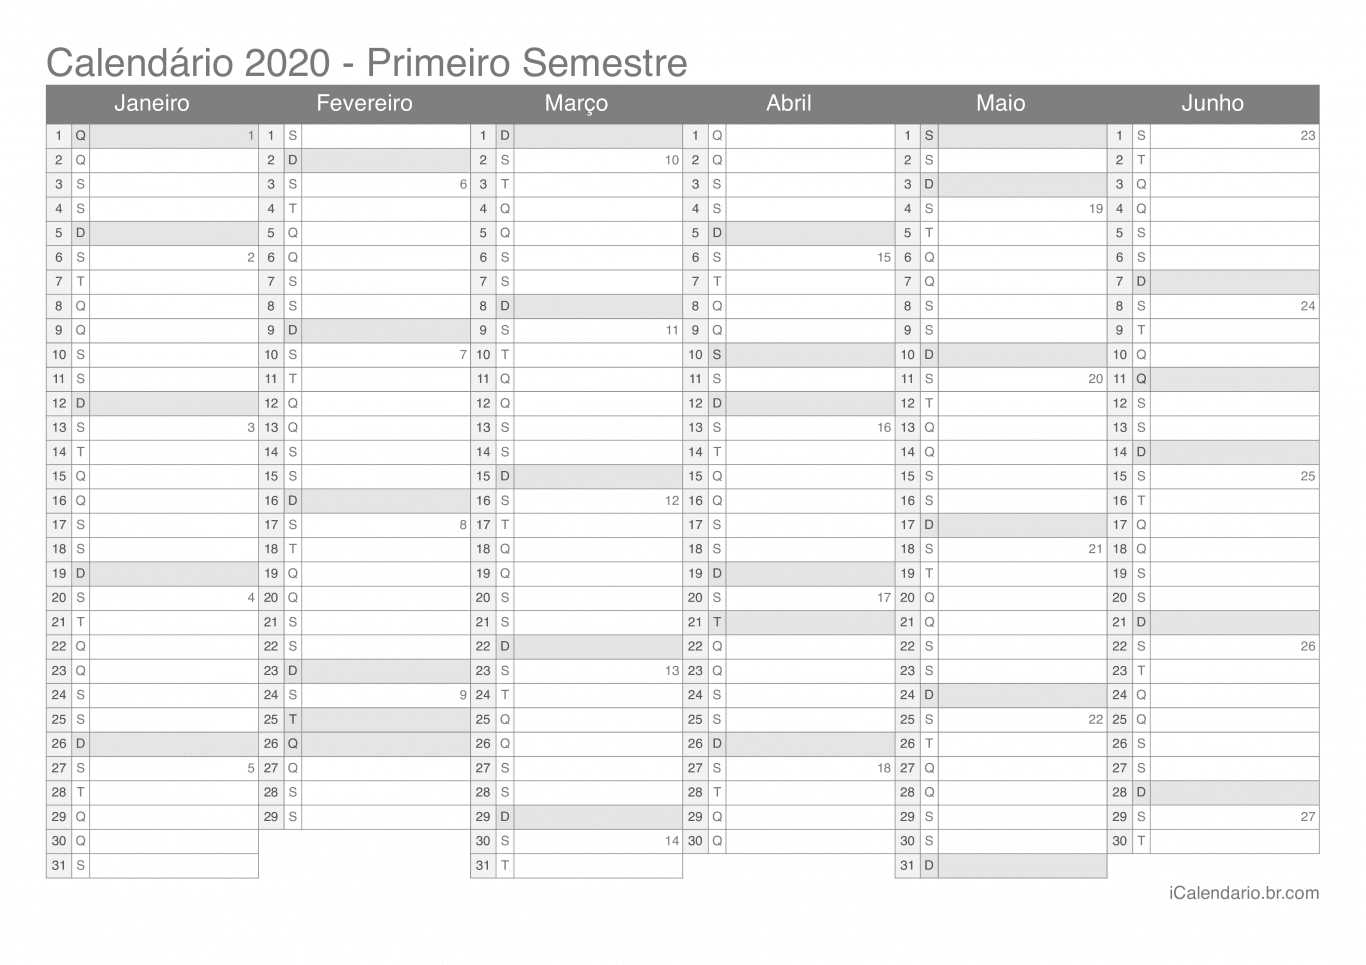 Calendário por semestre com números da semana 2020